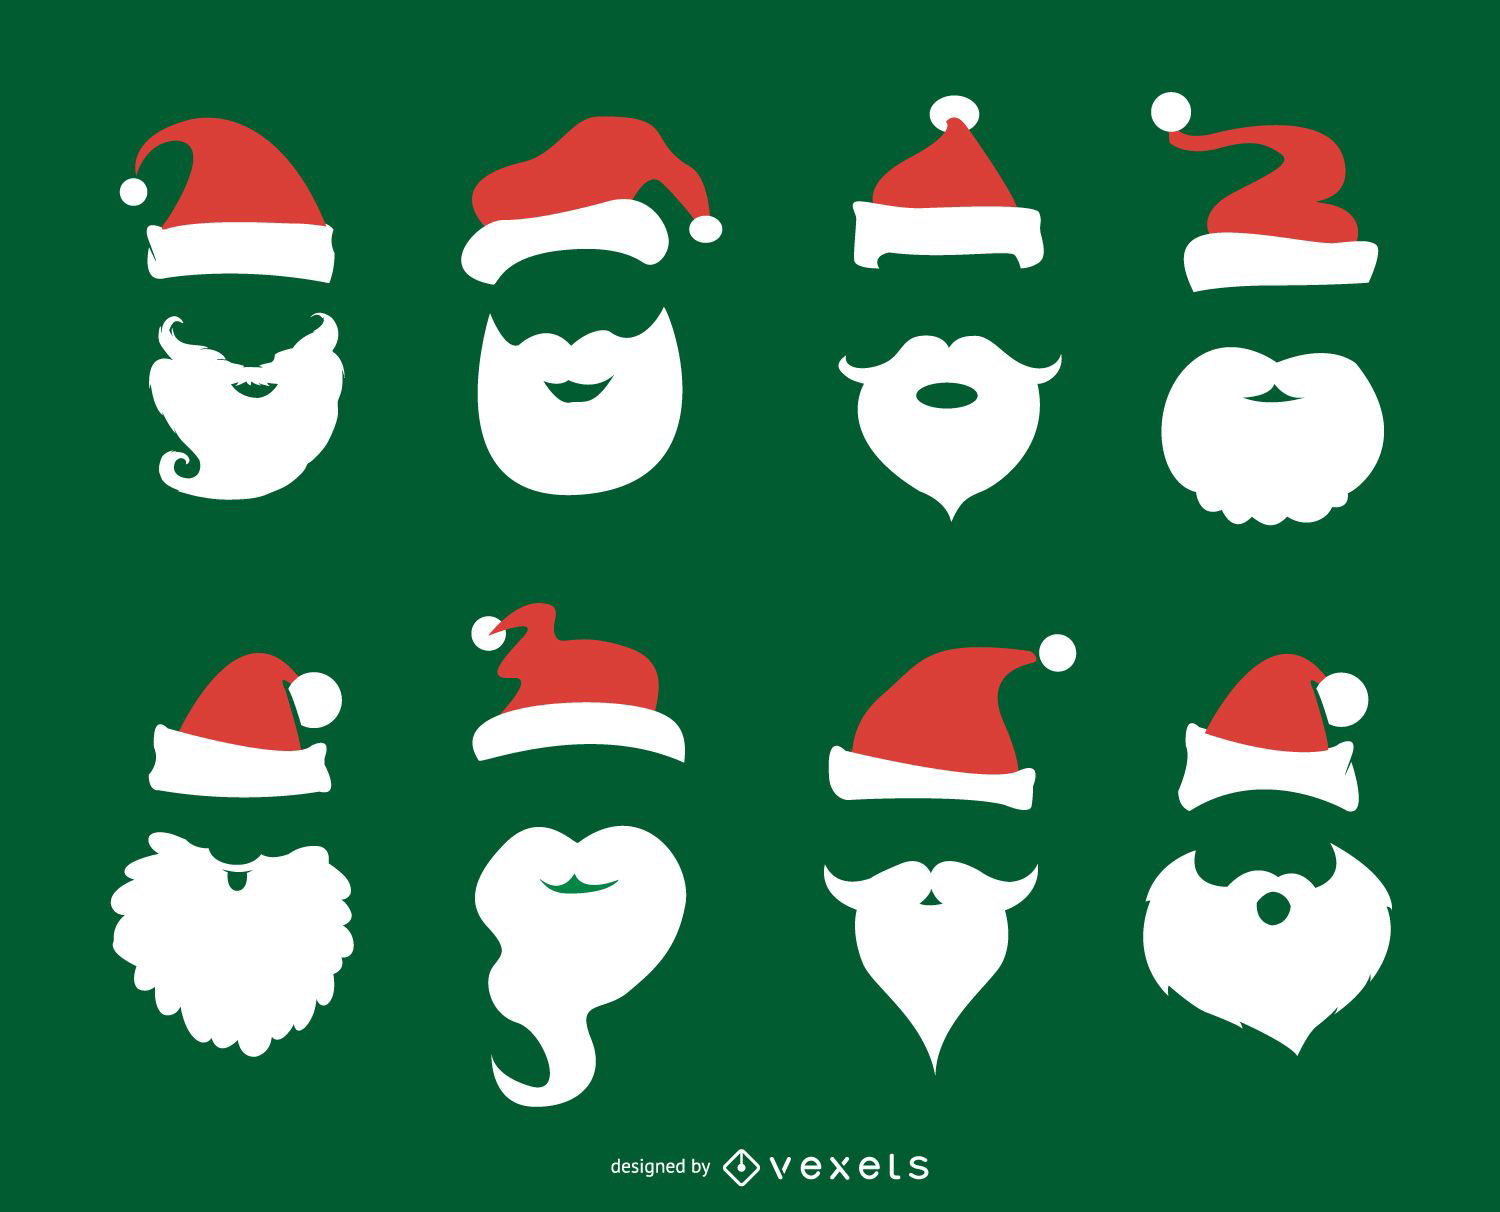 Santa Claus beard and hat set